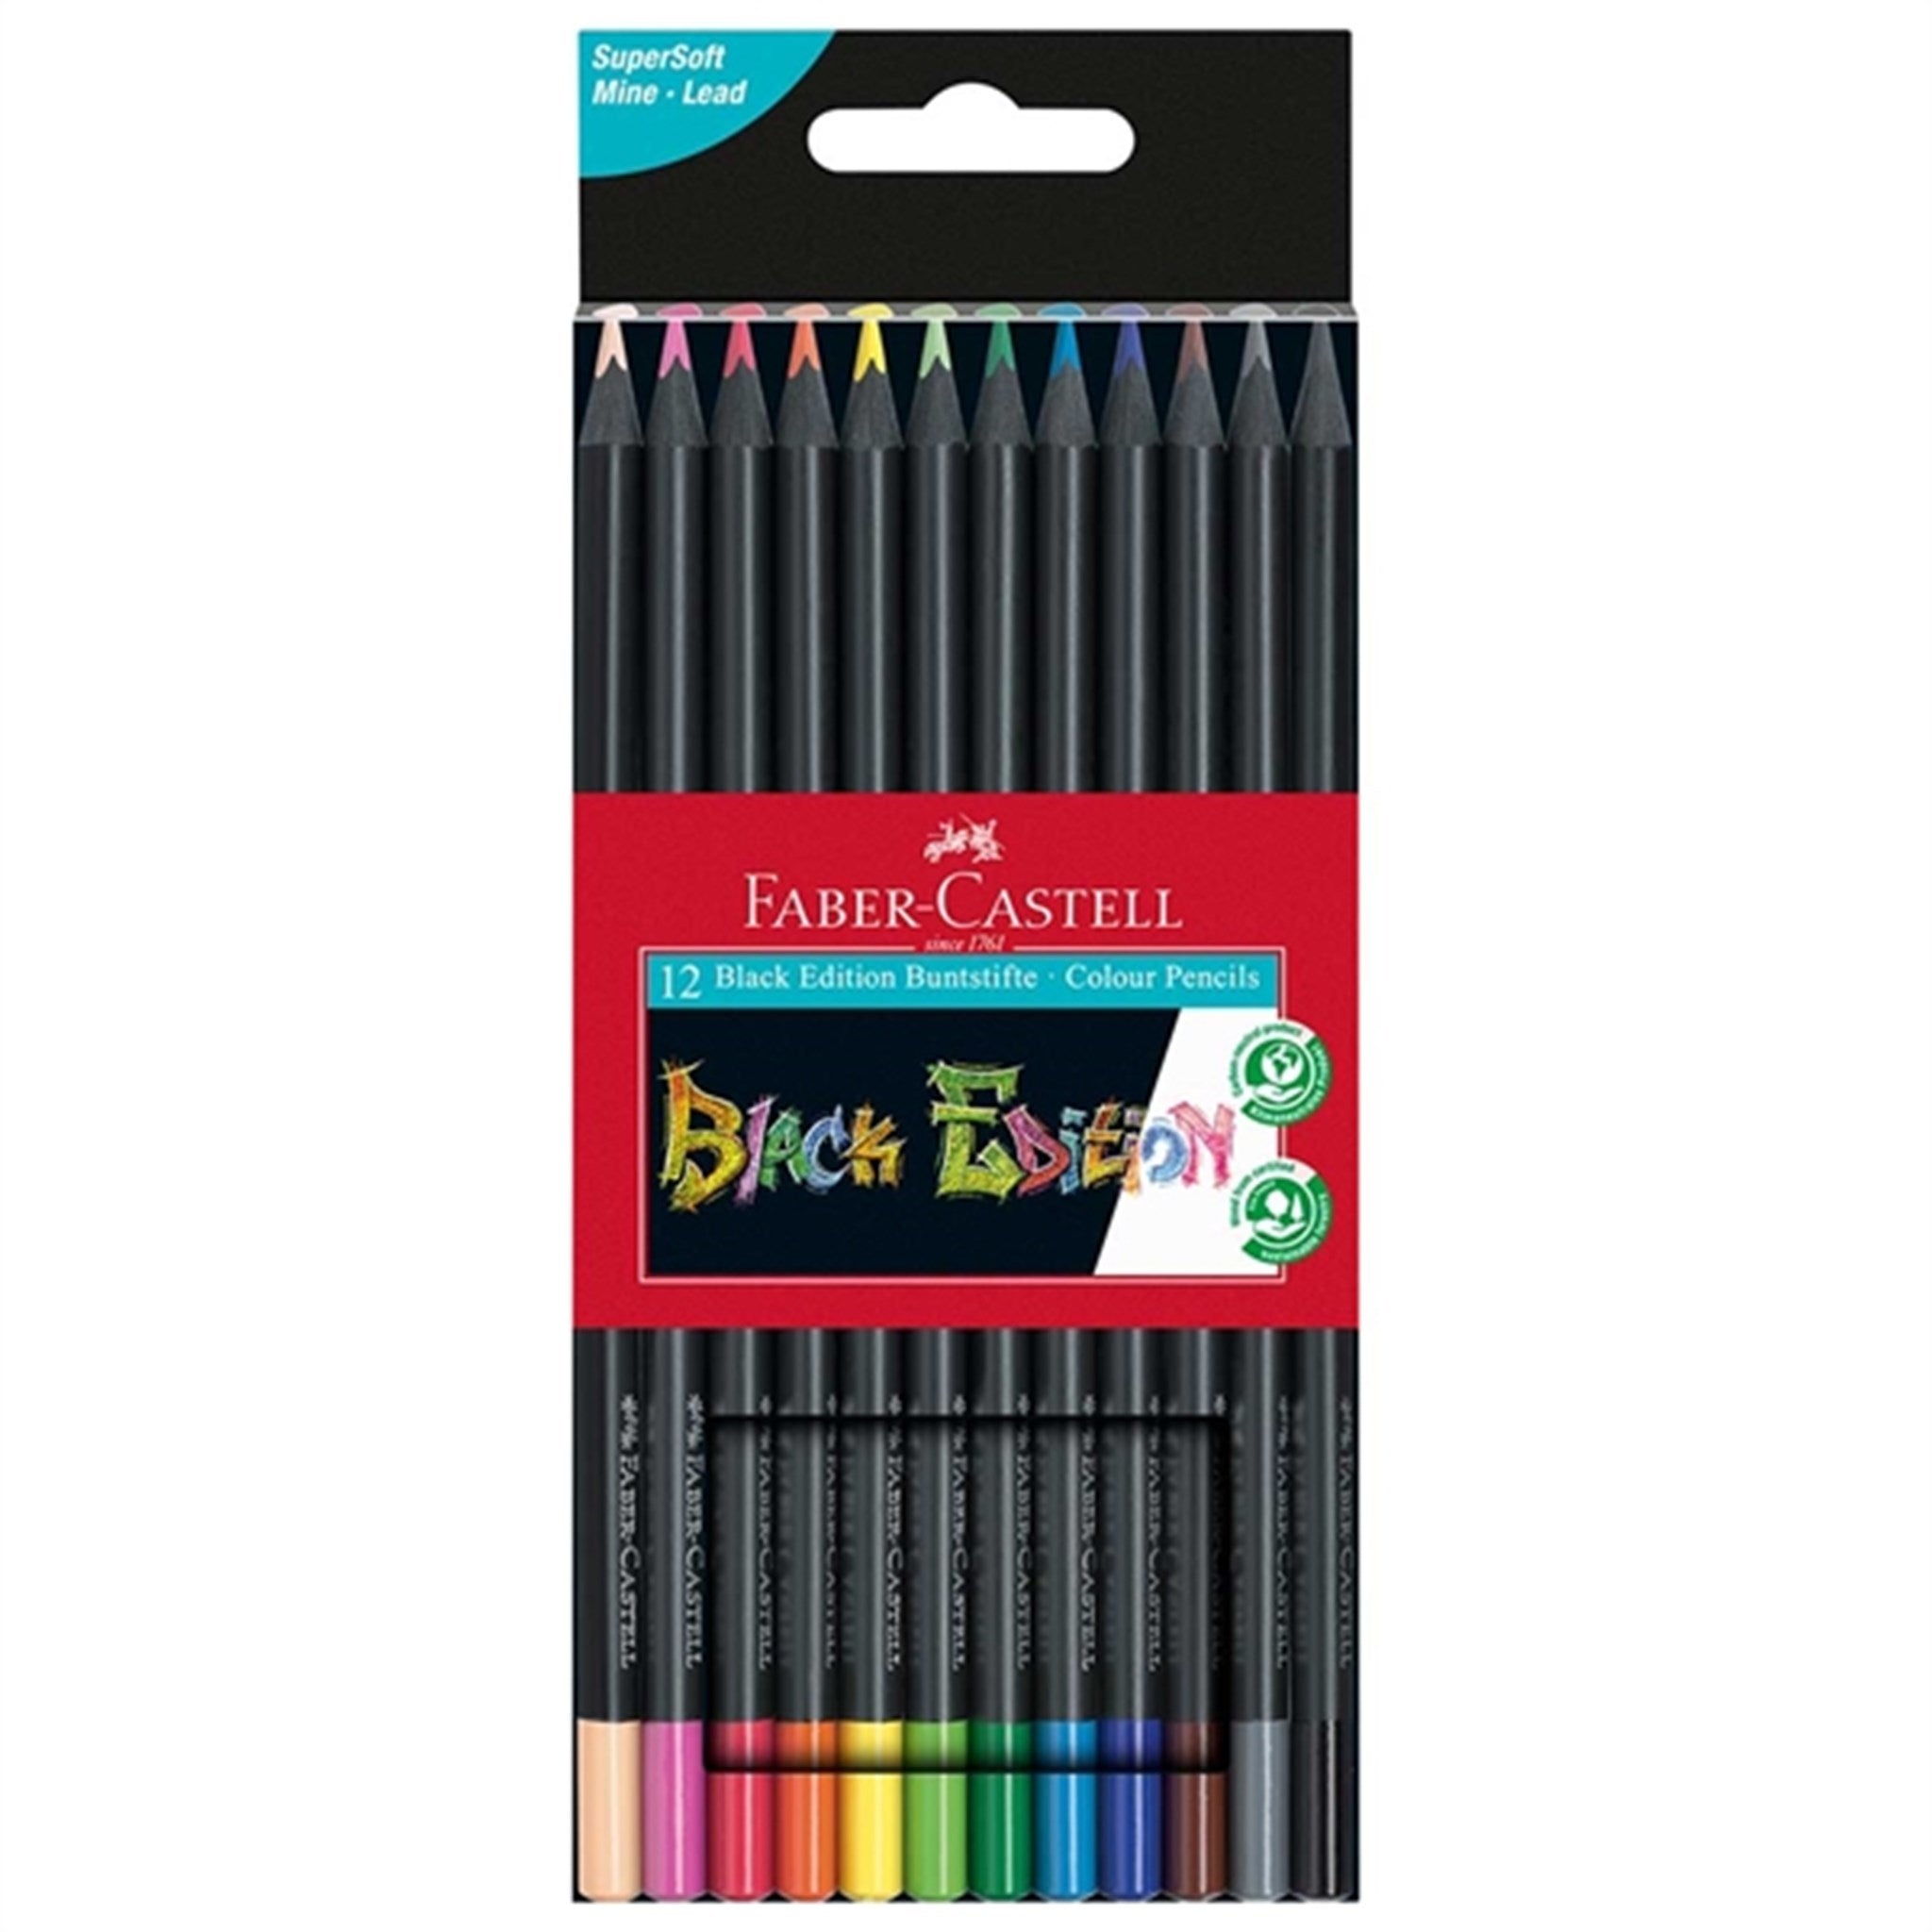 Faber Castell Black Edition 12 Colour Pencils